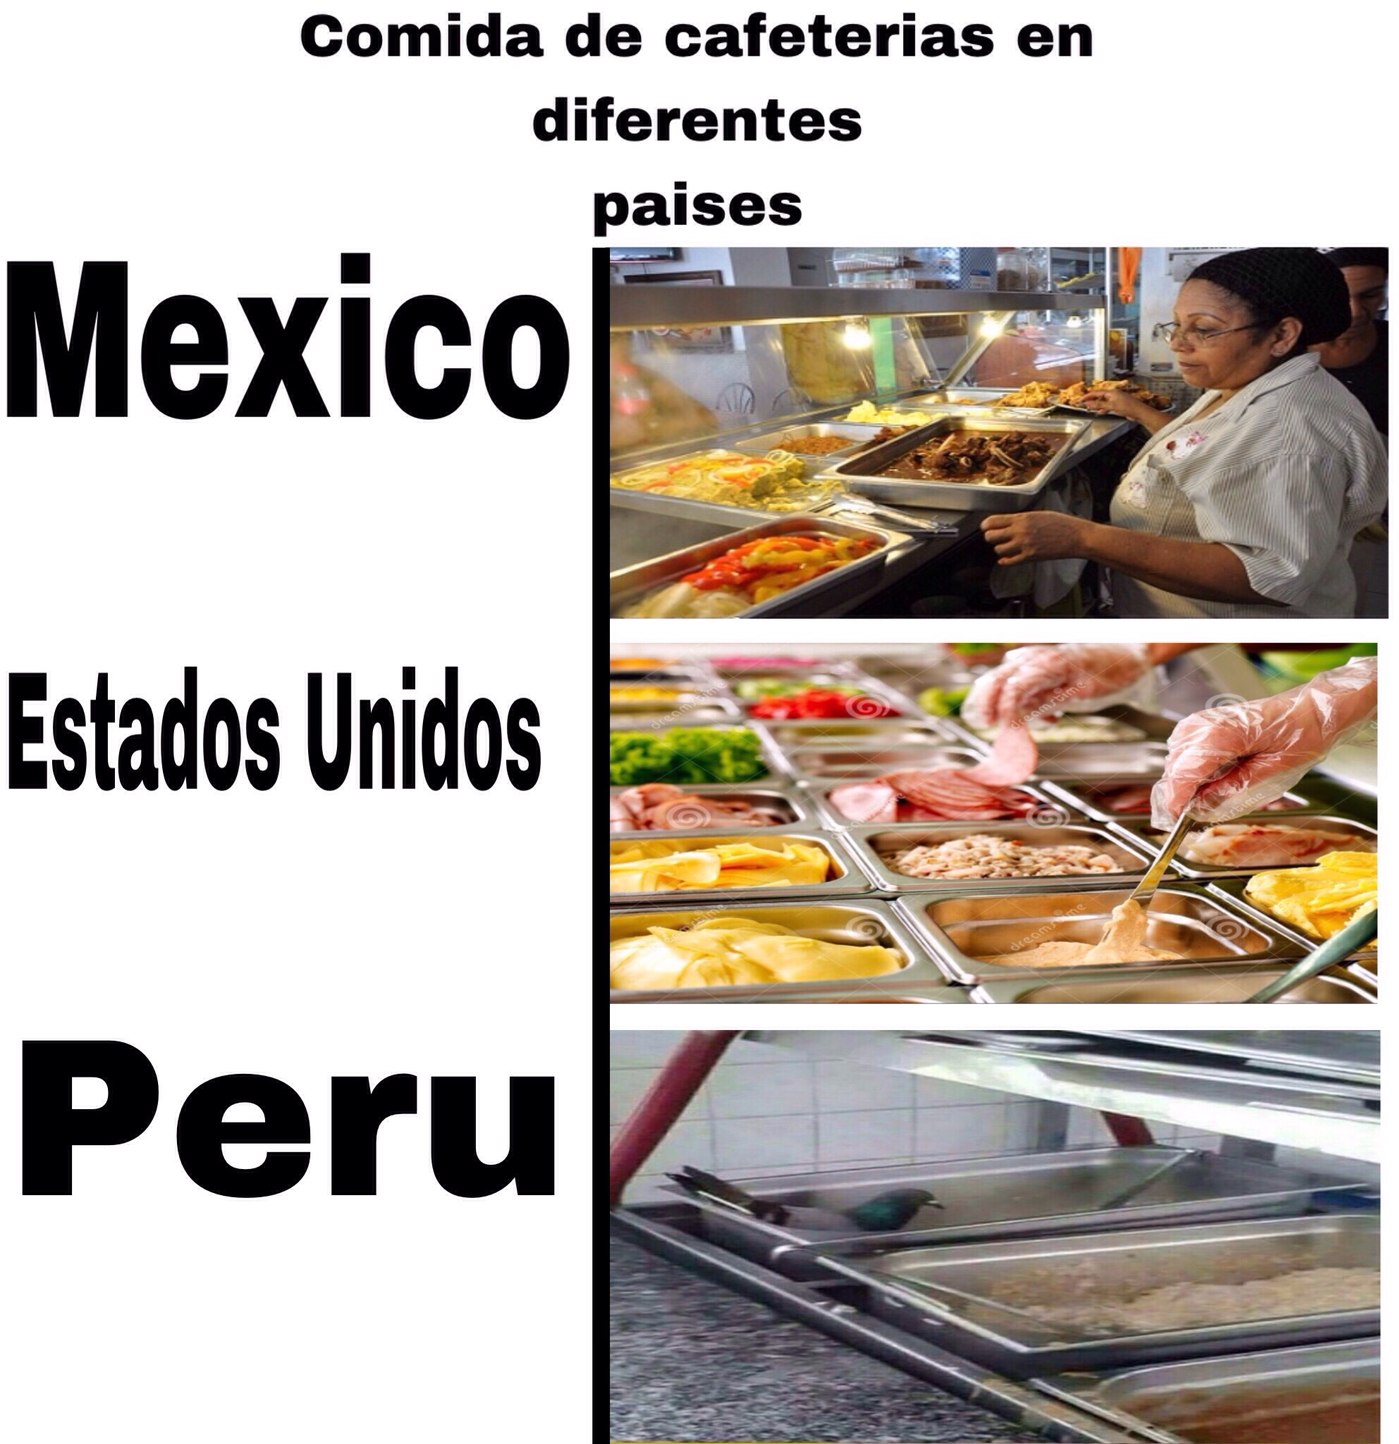 Palomas peruanas - meme